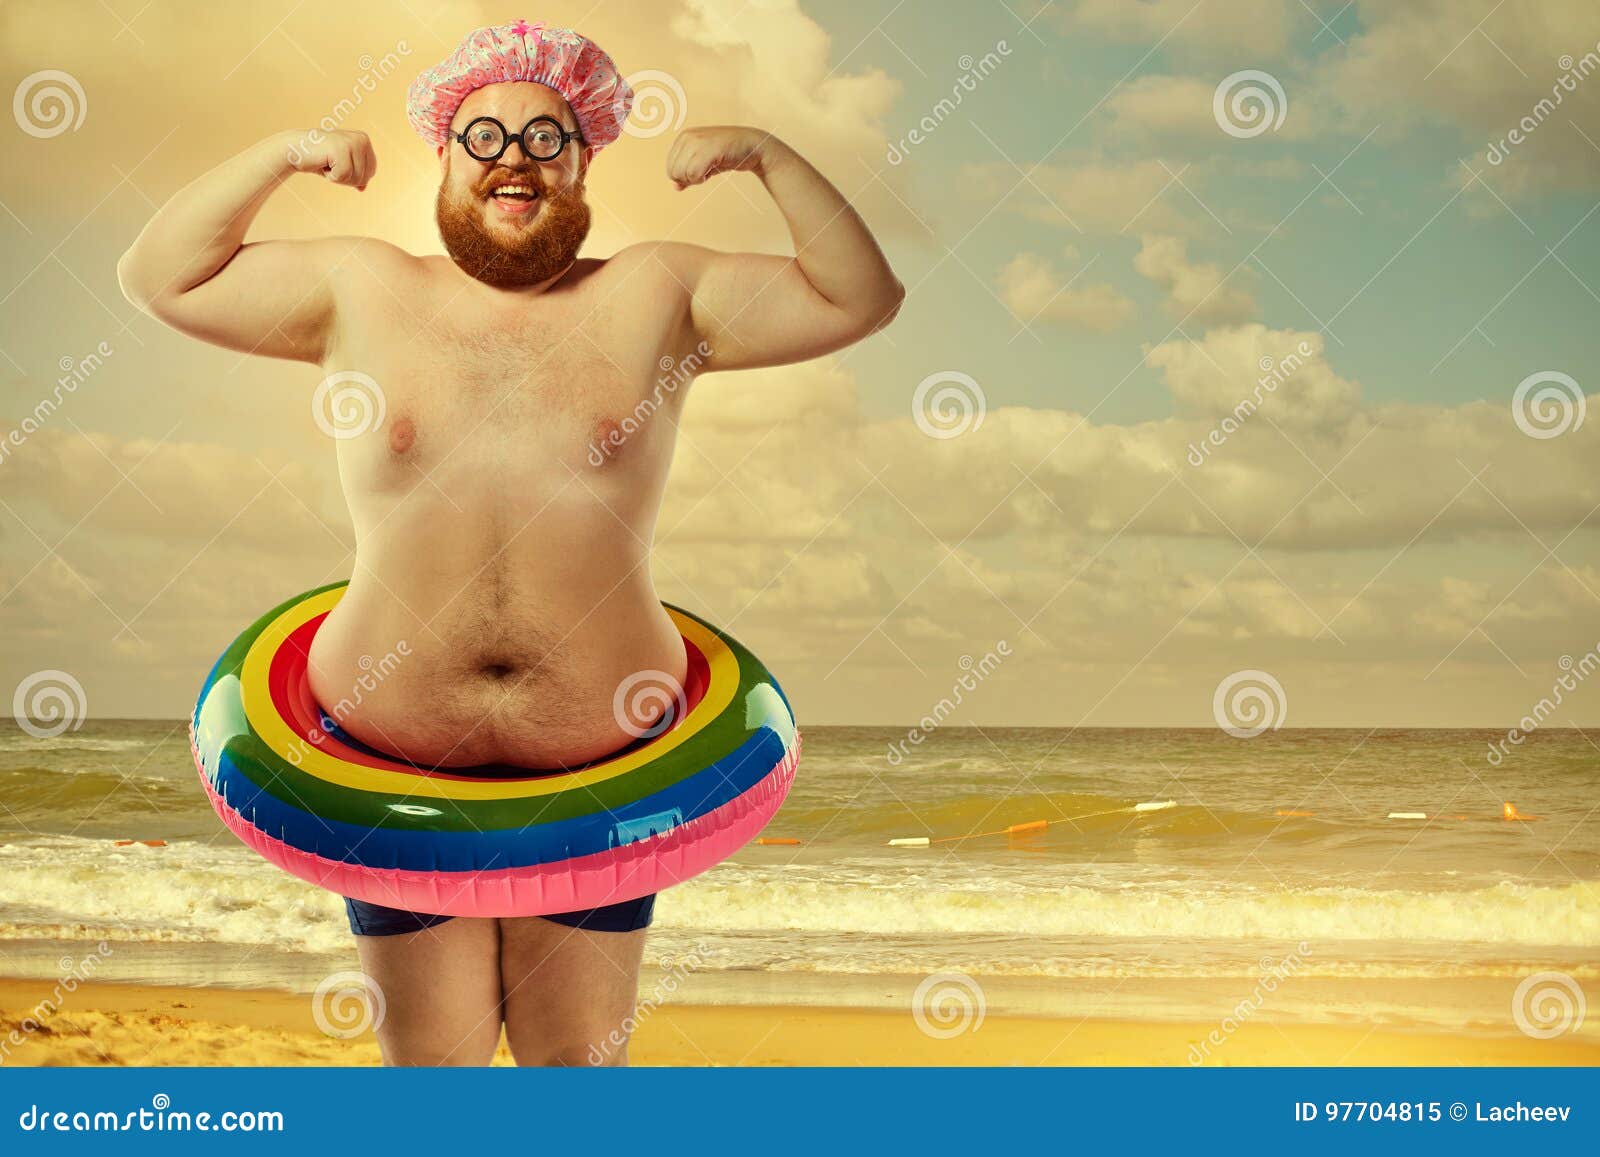 Hombre Gordo Divertido En Un Traje De Baño Con Un Círculo En El Bea Imagen de archivo - Imagen de anormal, 97704815